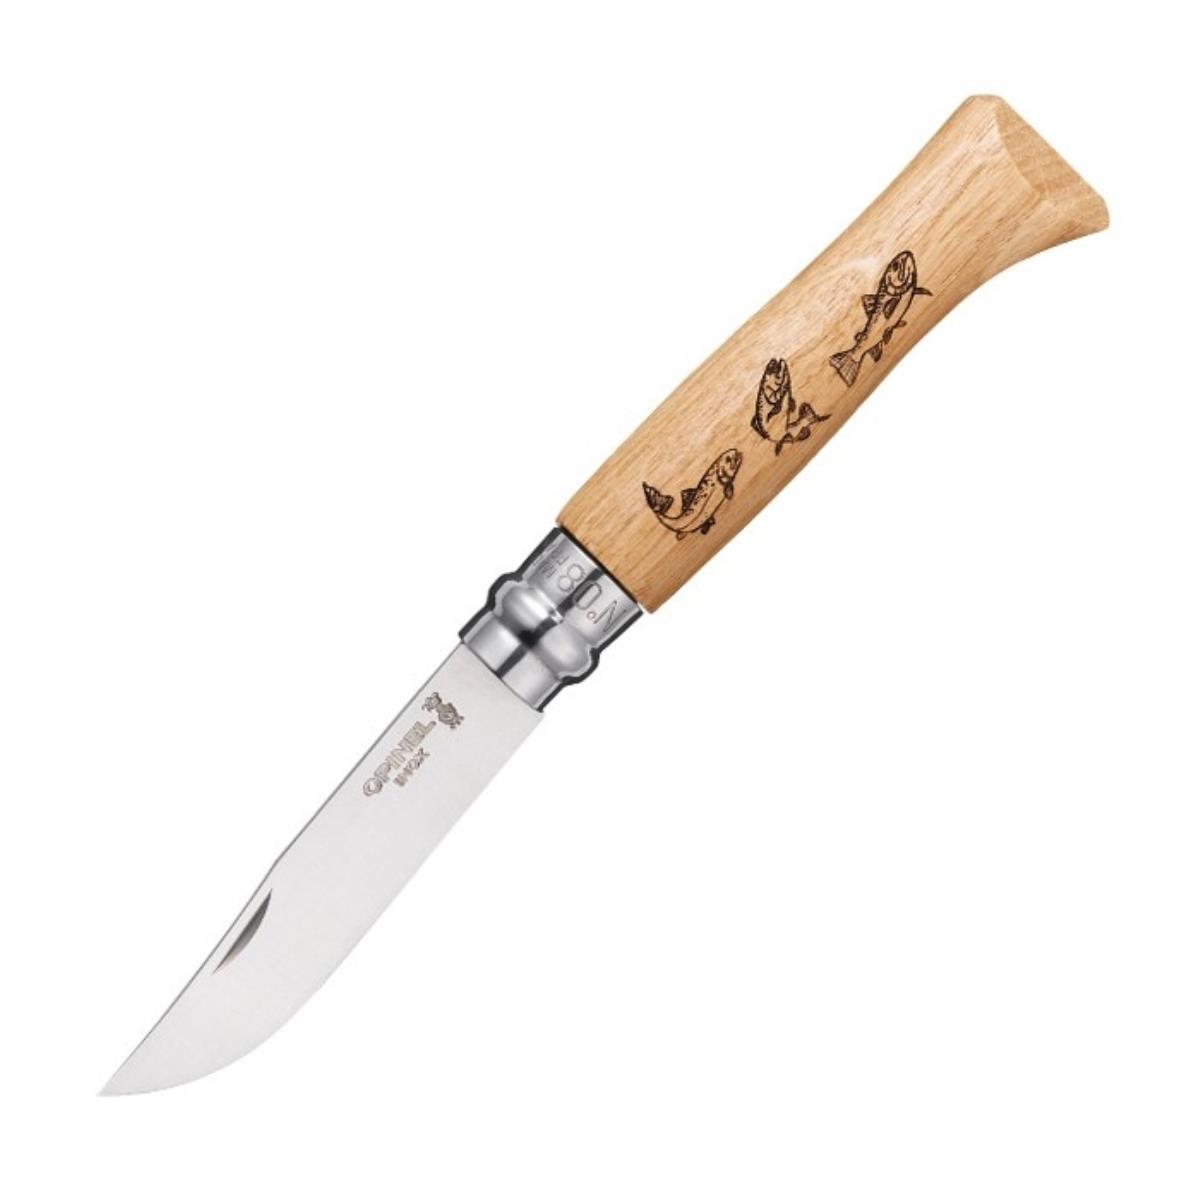 Нож №8 VRI Animalia Trout (форель), рукоять дуб, длина клинка 8.5 OPINEL нож охотничий мастер к рукоять дерево с бронзой клинок 11 см